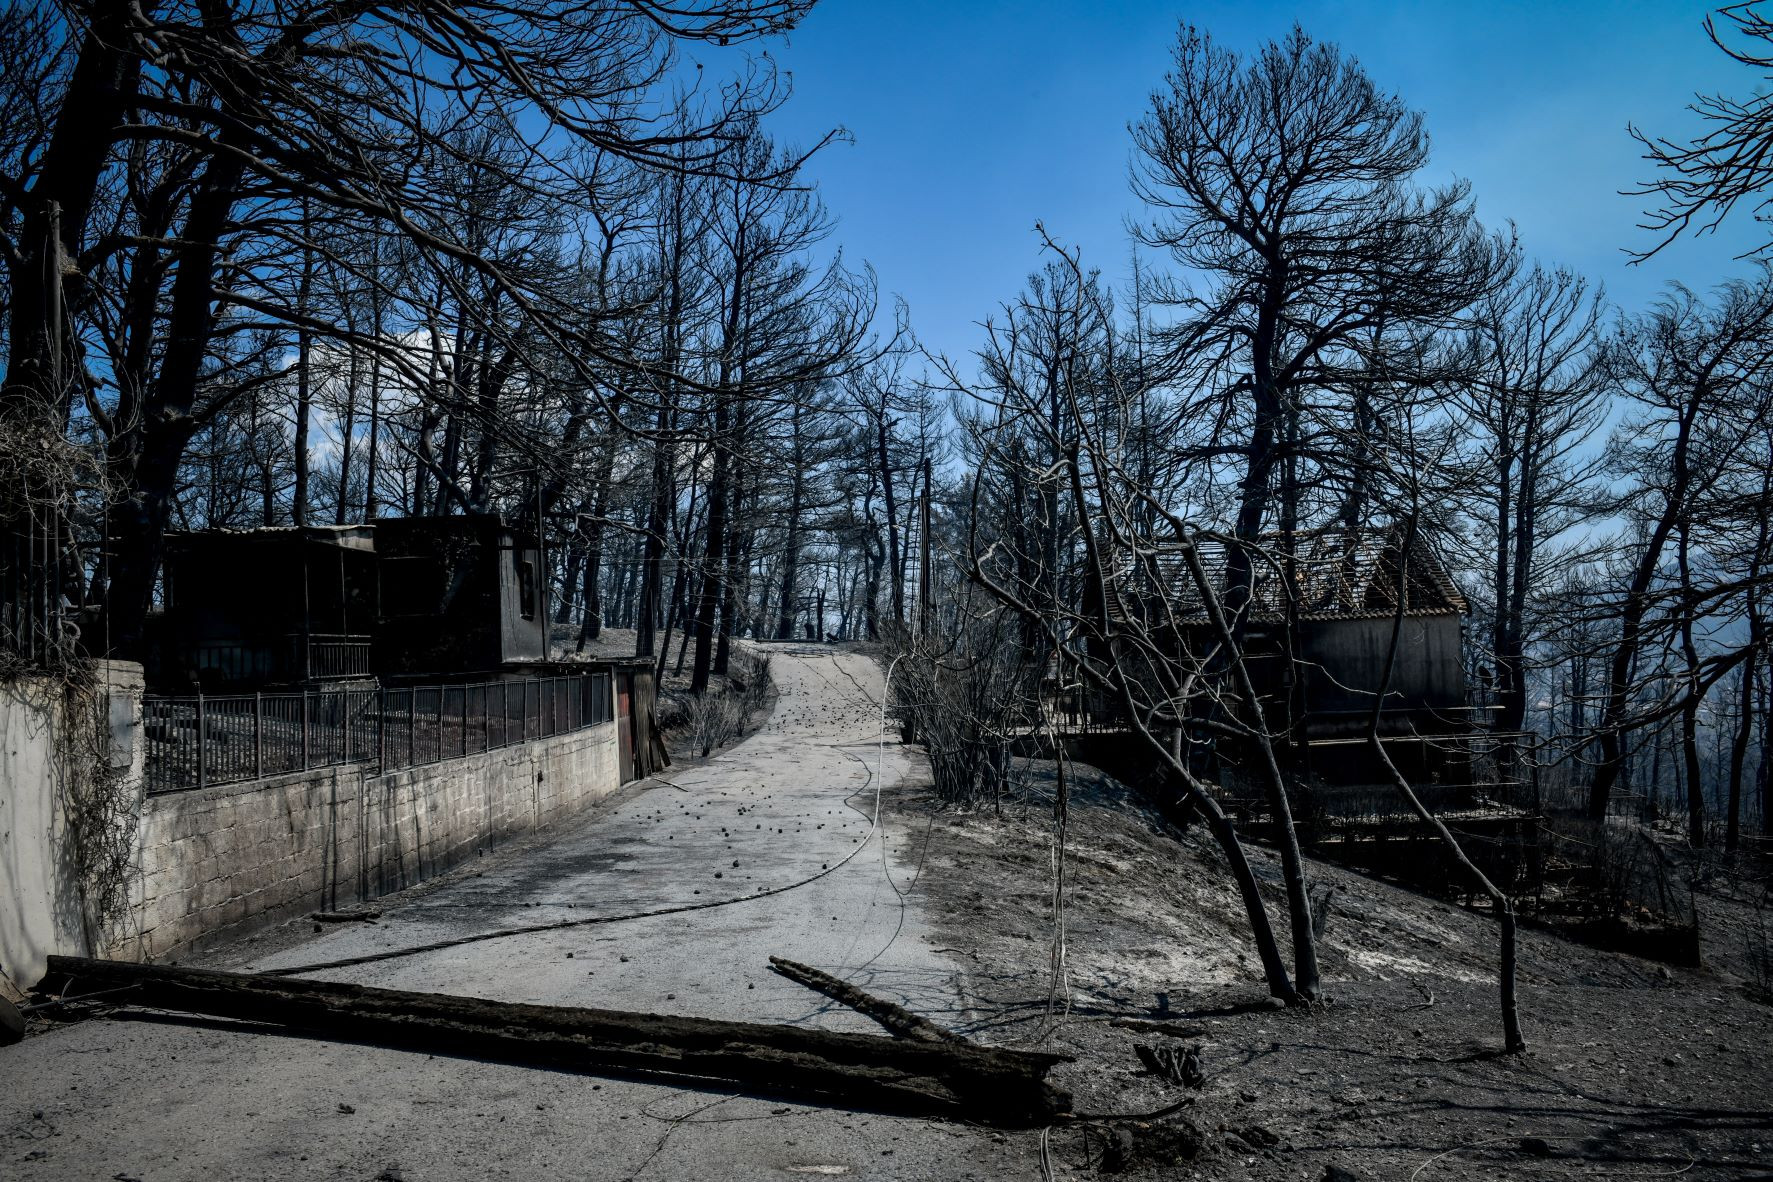 Καθηγητής Ραψομανίκης: Να αξιοποιηθεί άμεσα η έκθεση Γκολντάμερ για τις δασικές πυρκαγιές